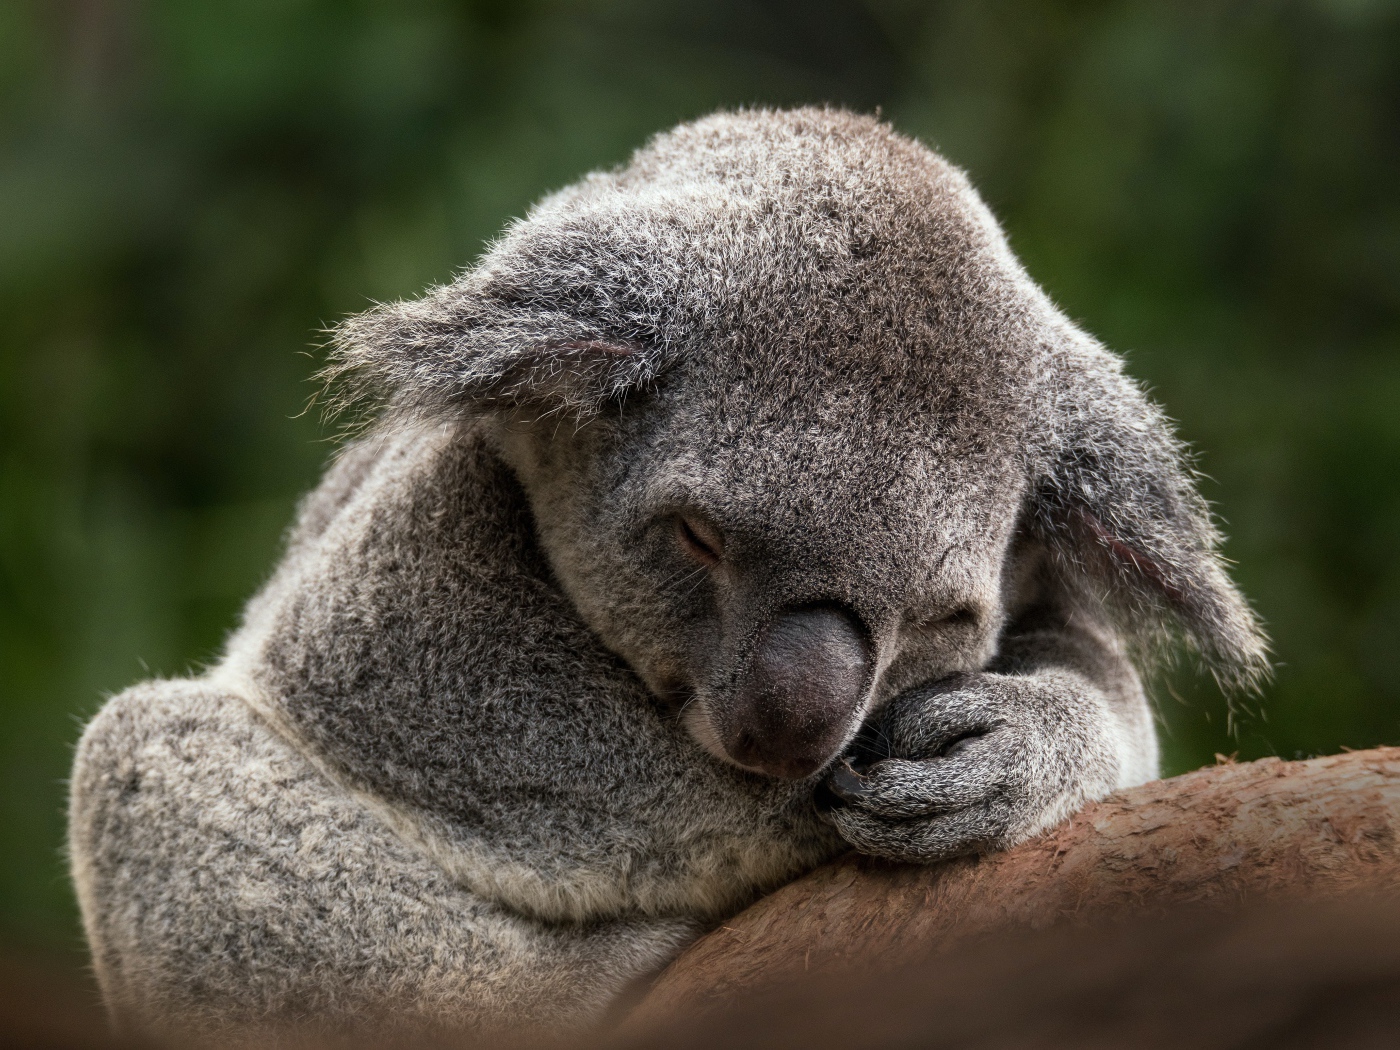 Koala sleeping on a tree branch